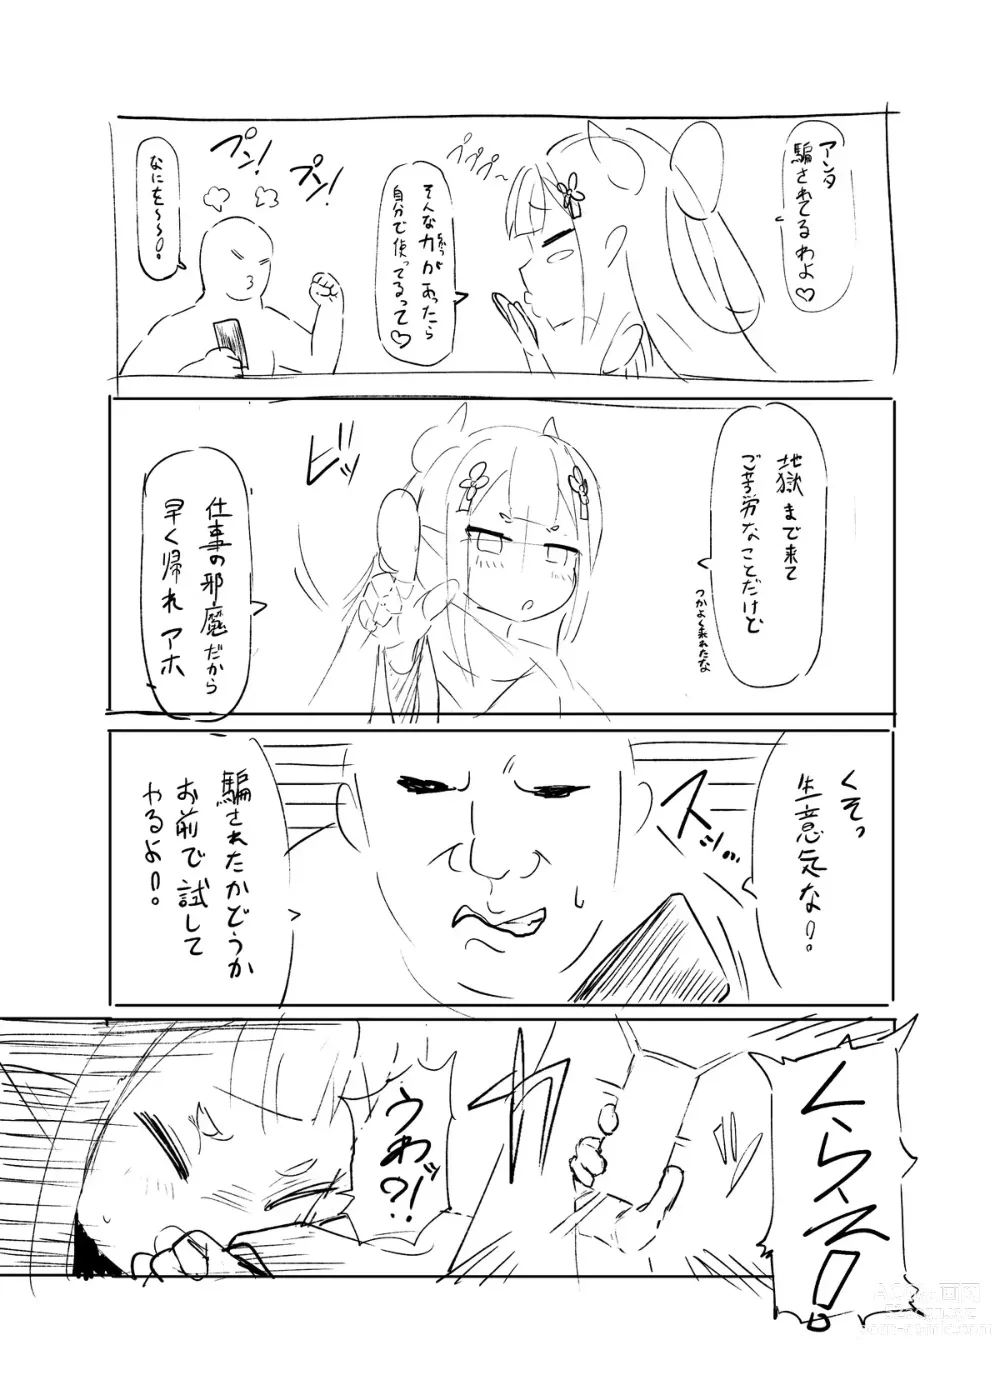 Page 6 of doujinshi ni ji sōsaku dōjinshi rafu mi kansei roku pe-ji